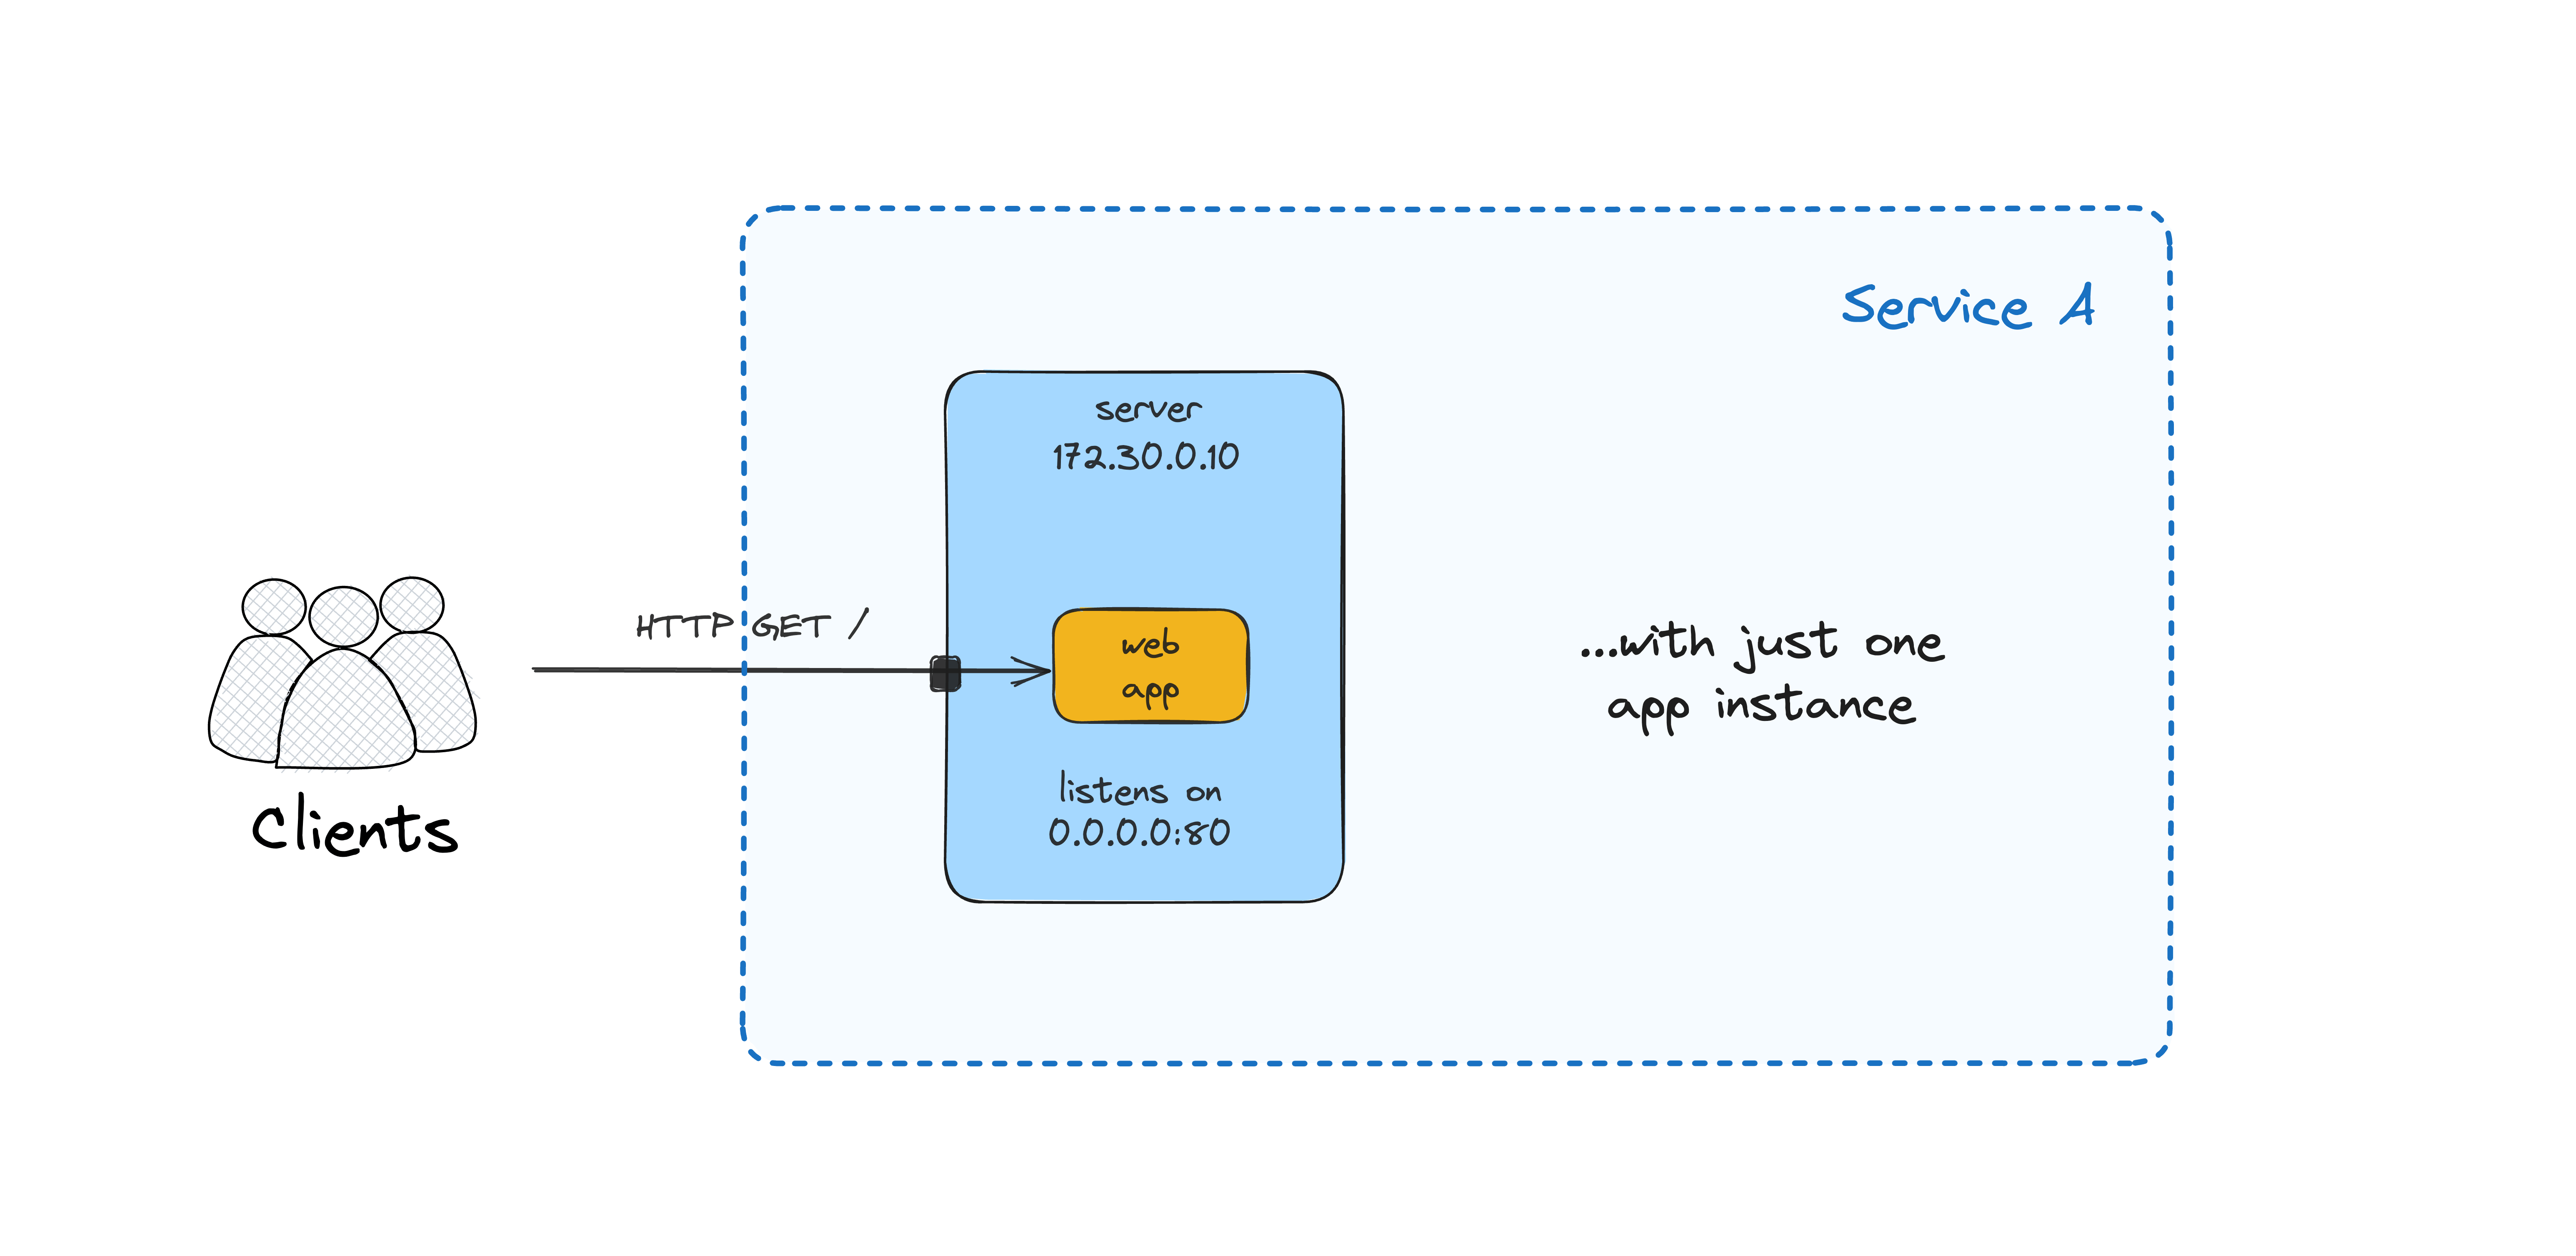 A single application instance deployed on a VM.